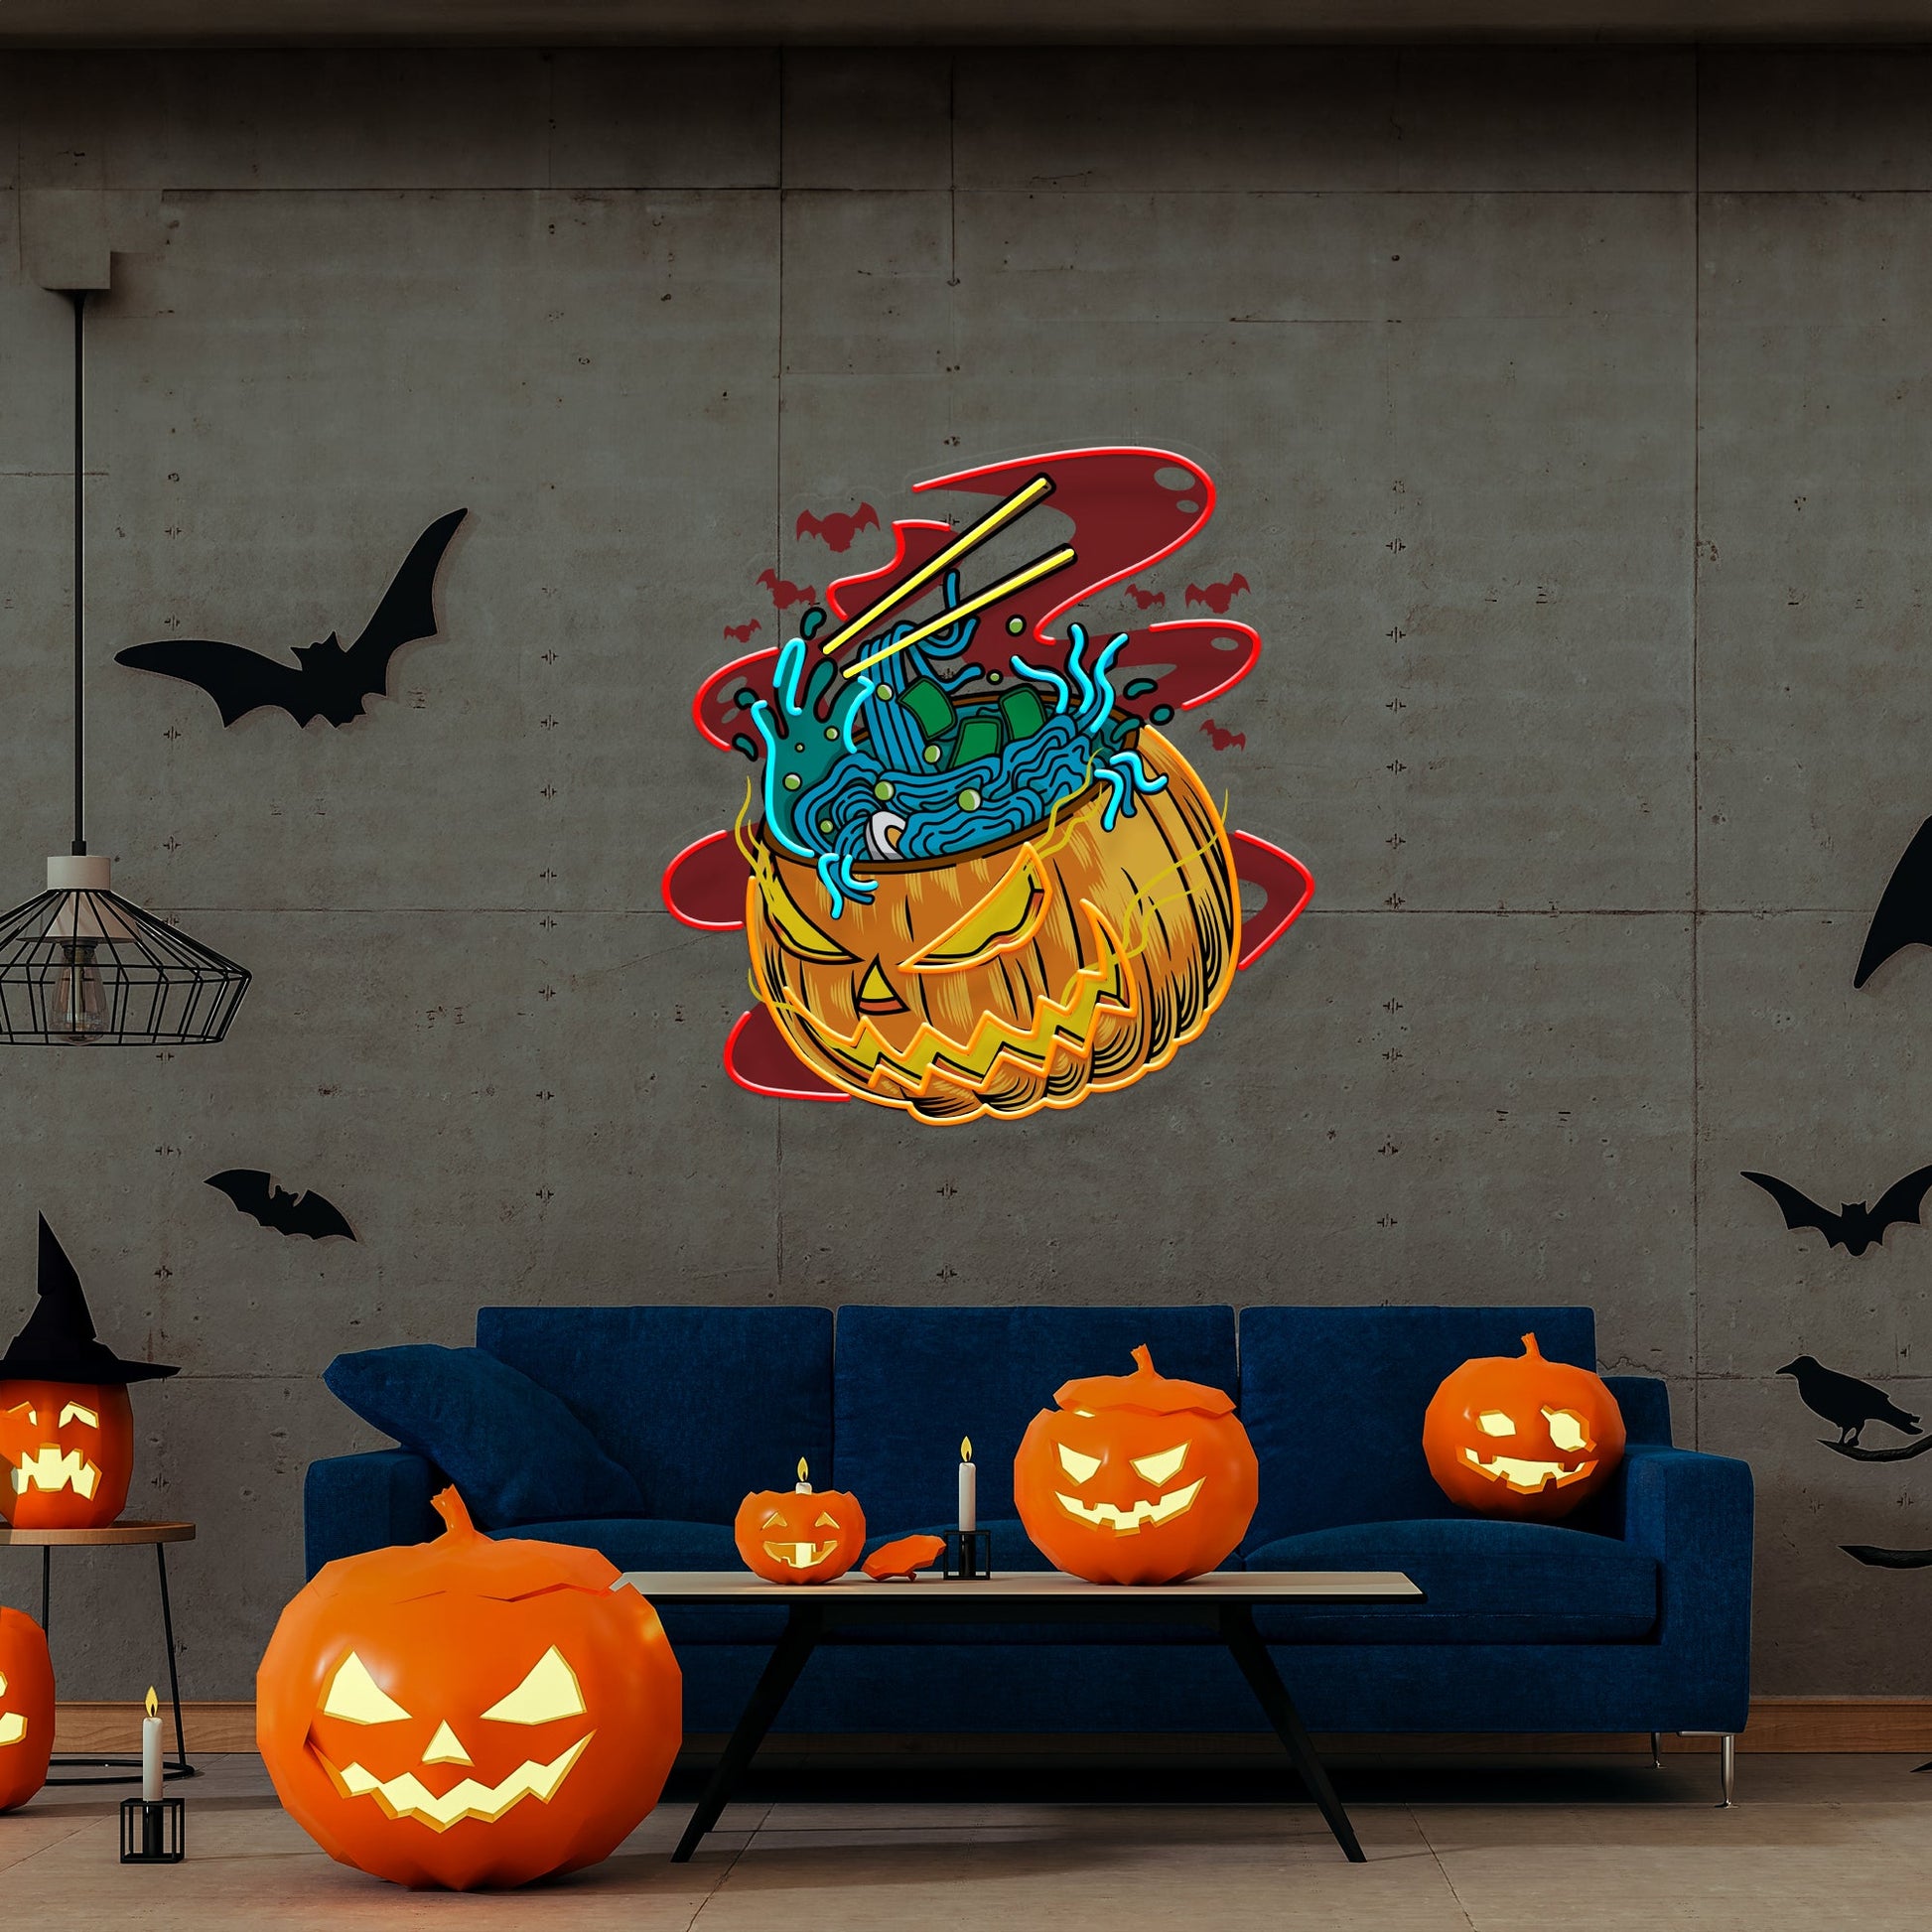 Pumpkin Ramen Monster With Halloween Artwork Led Neon Sign Light - Neonzastudio